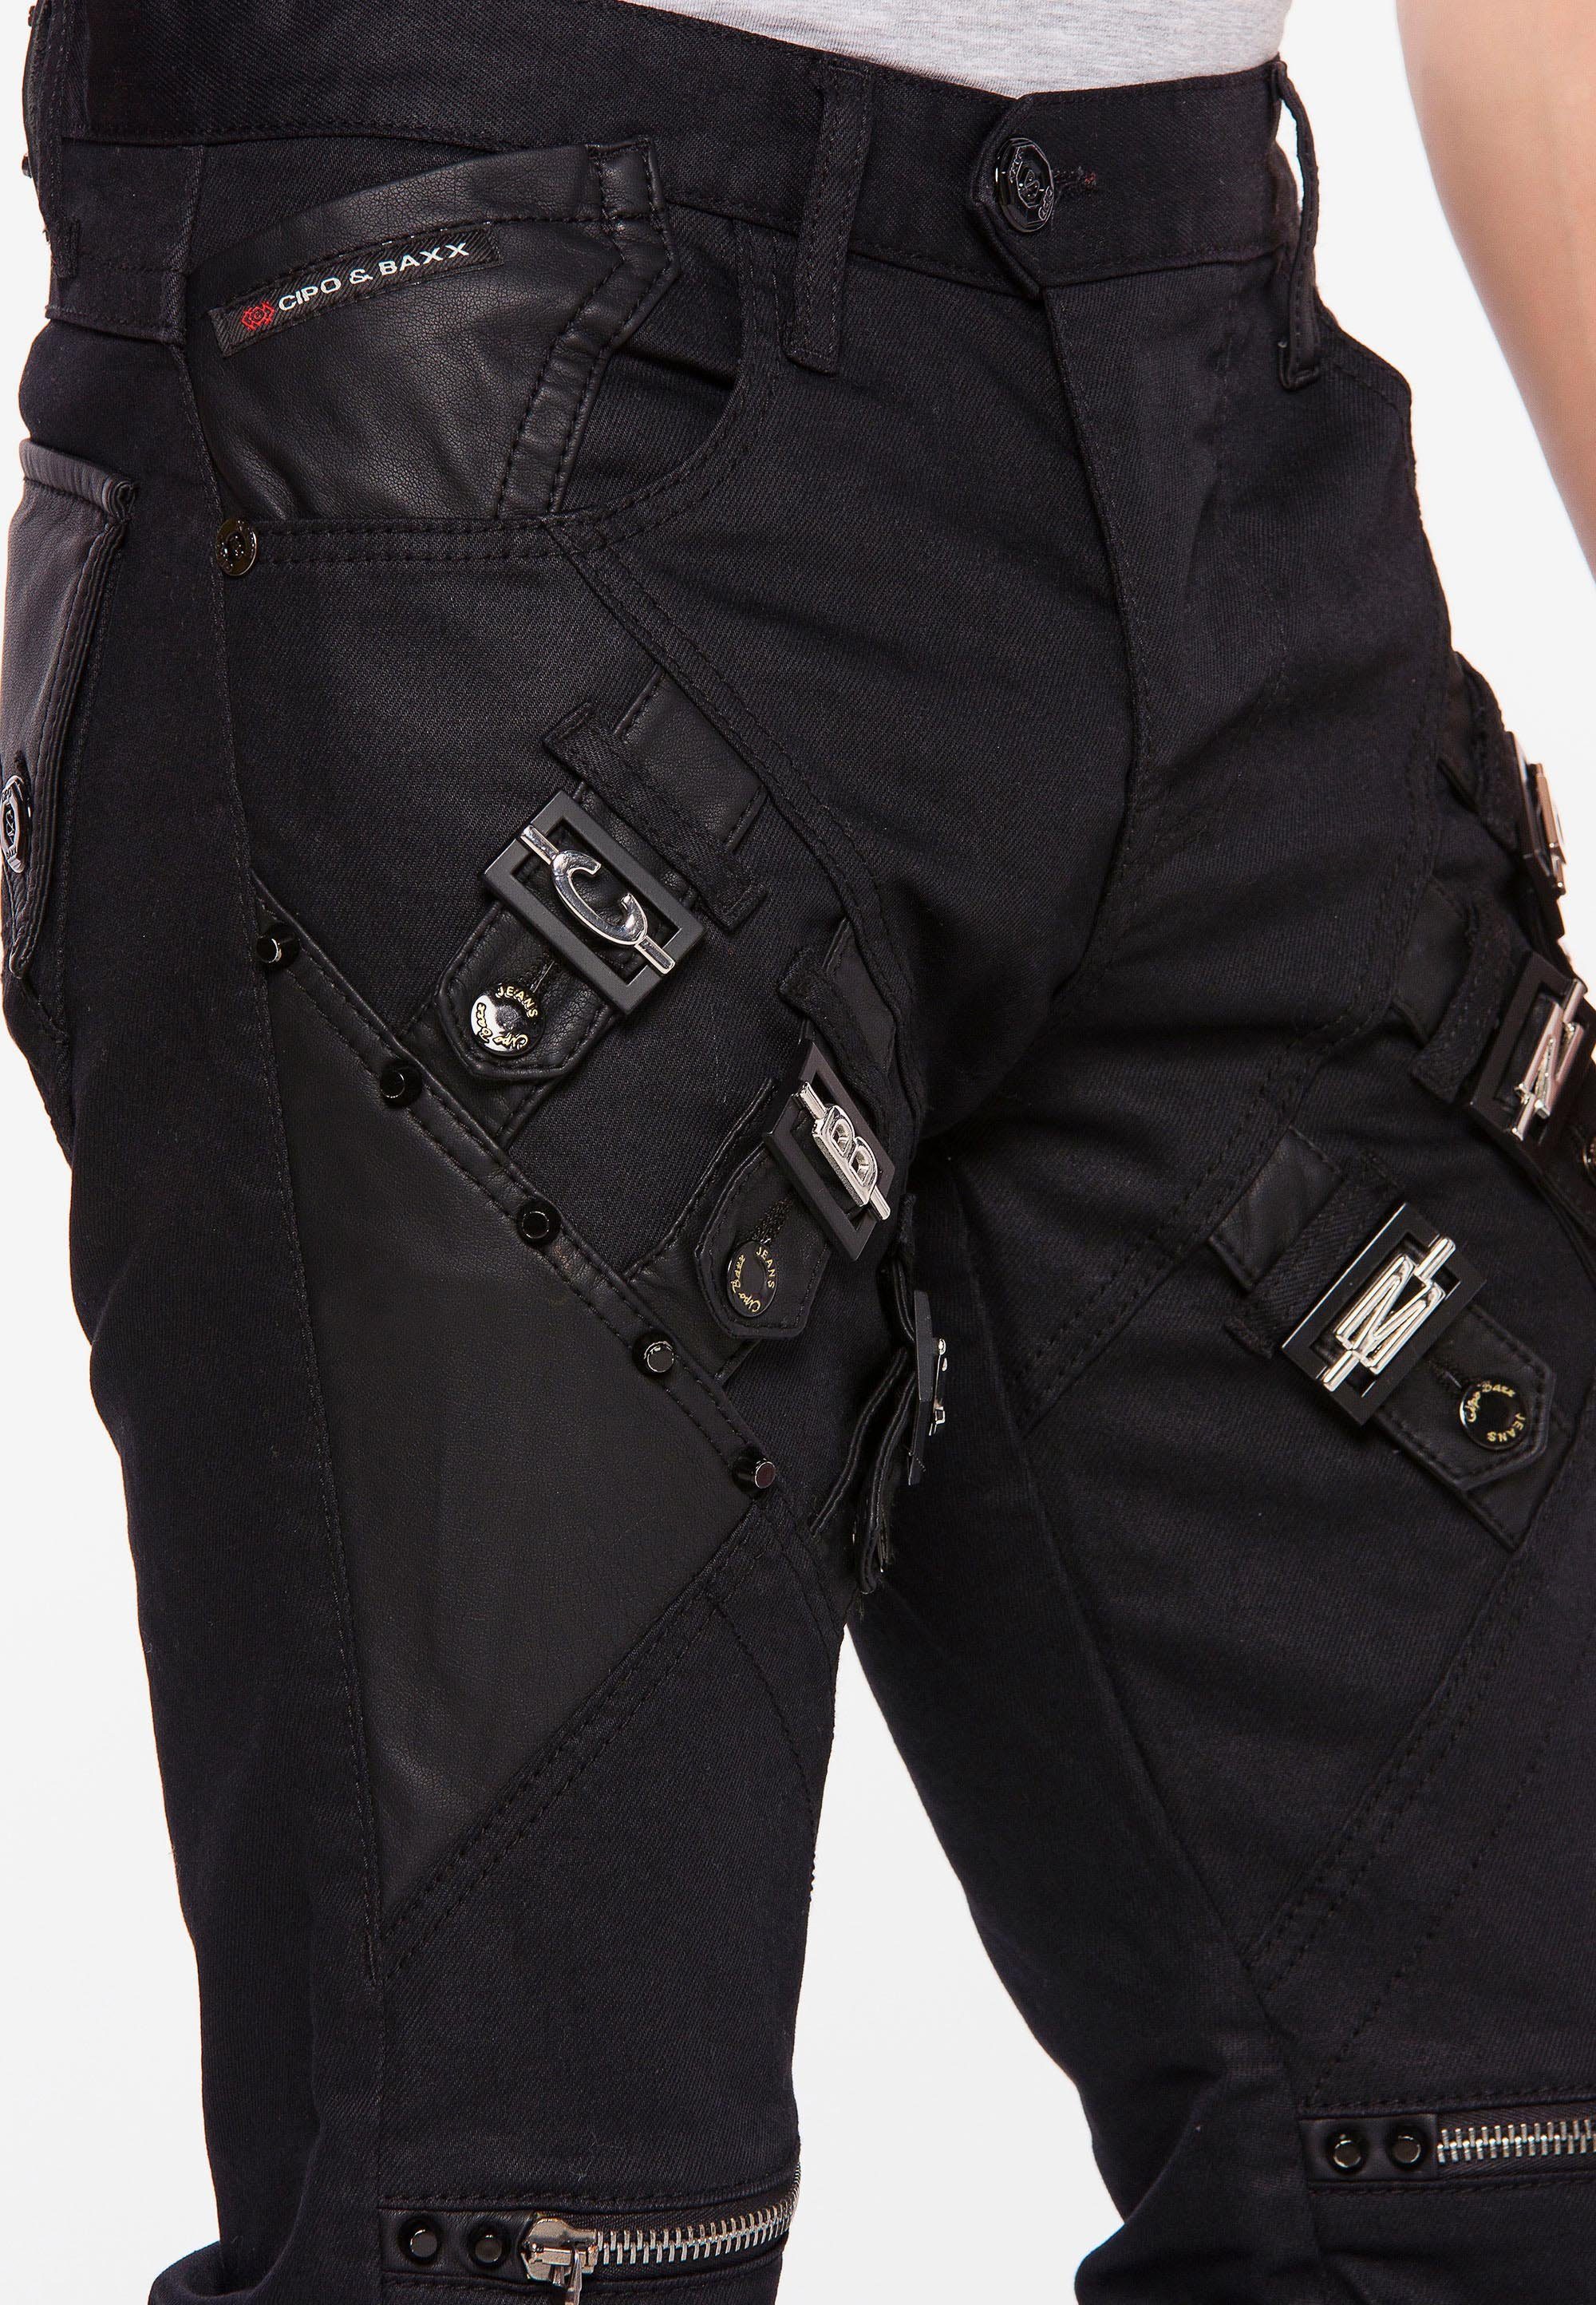 Straight-Jeans & mit Cipo Baxx coolen Reißverschlussapplikationen